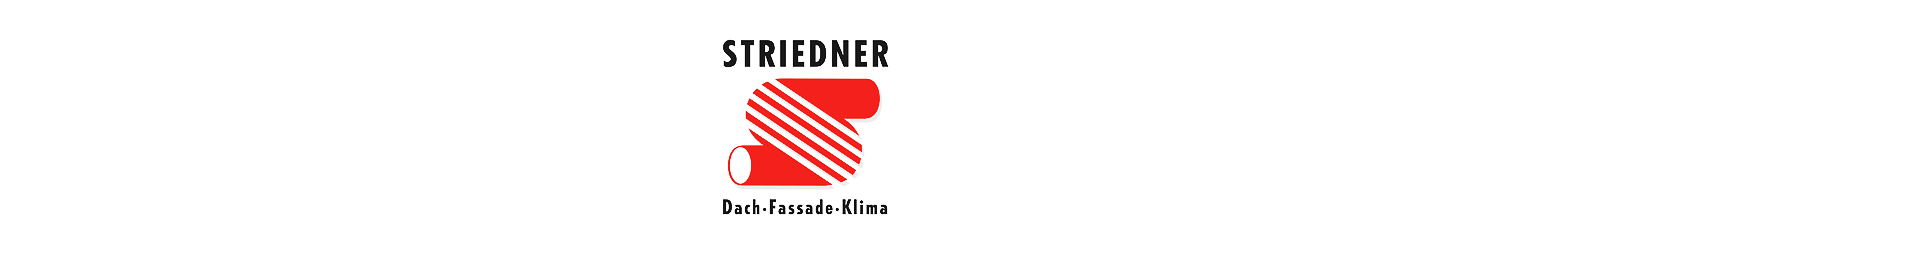 Striedner Dach-Fassade-Logo